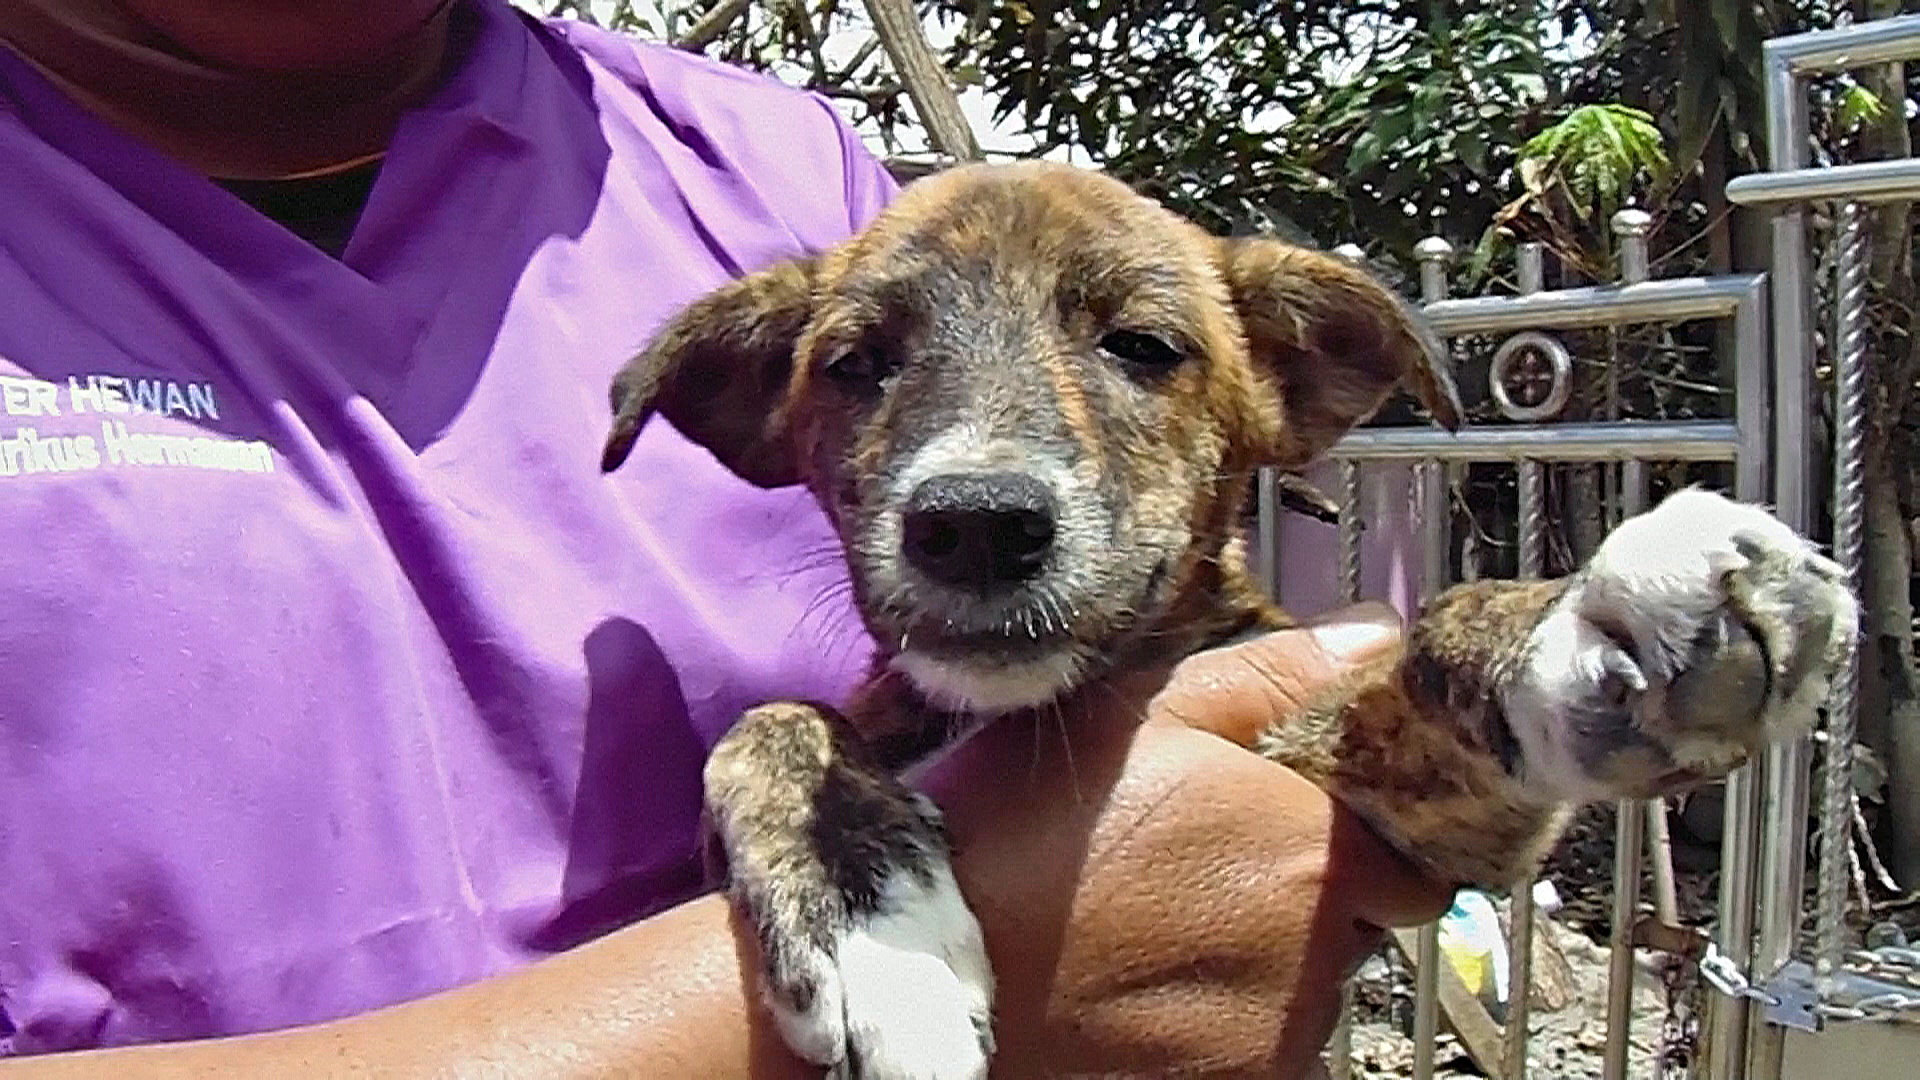 Волонтёры в Индонезии спасают собак после извержения, но просят их не есть